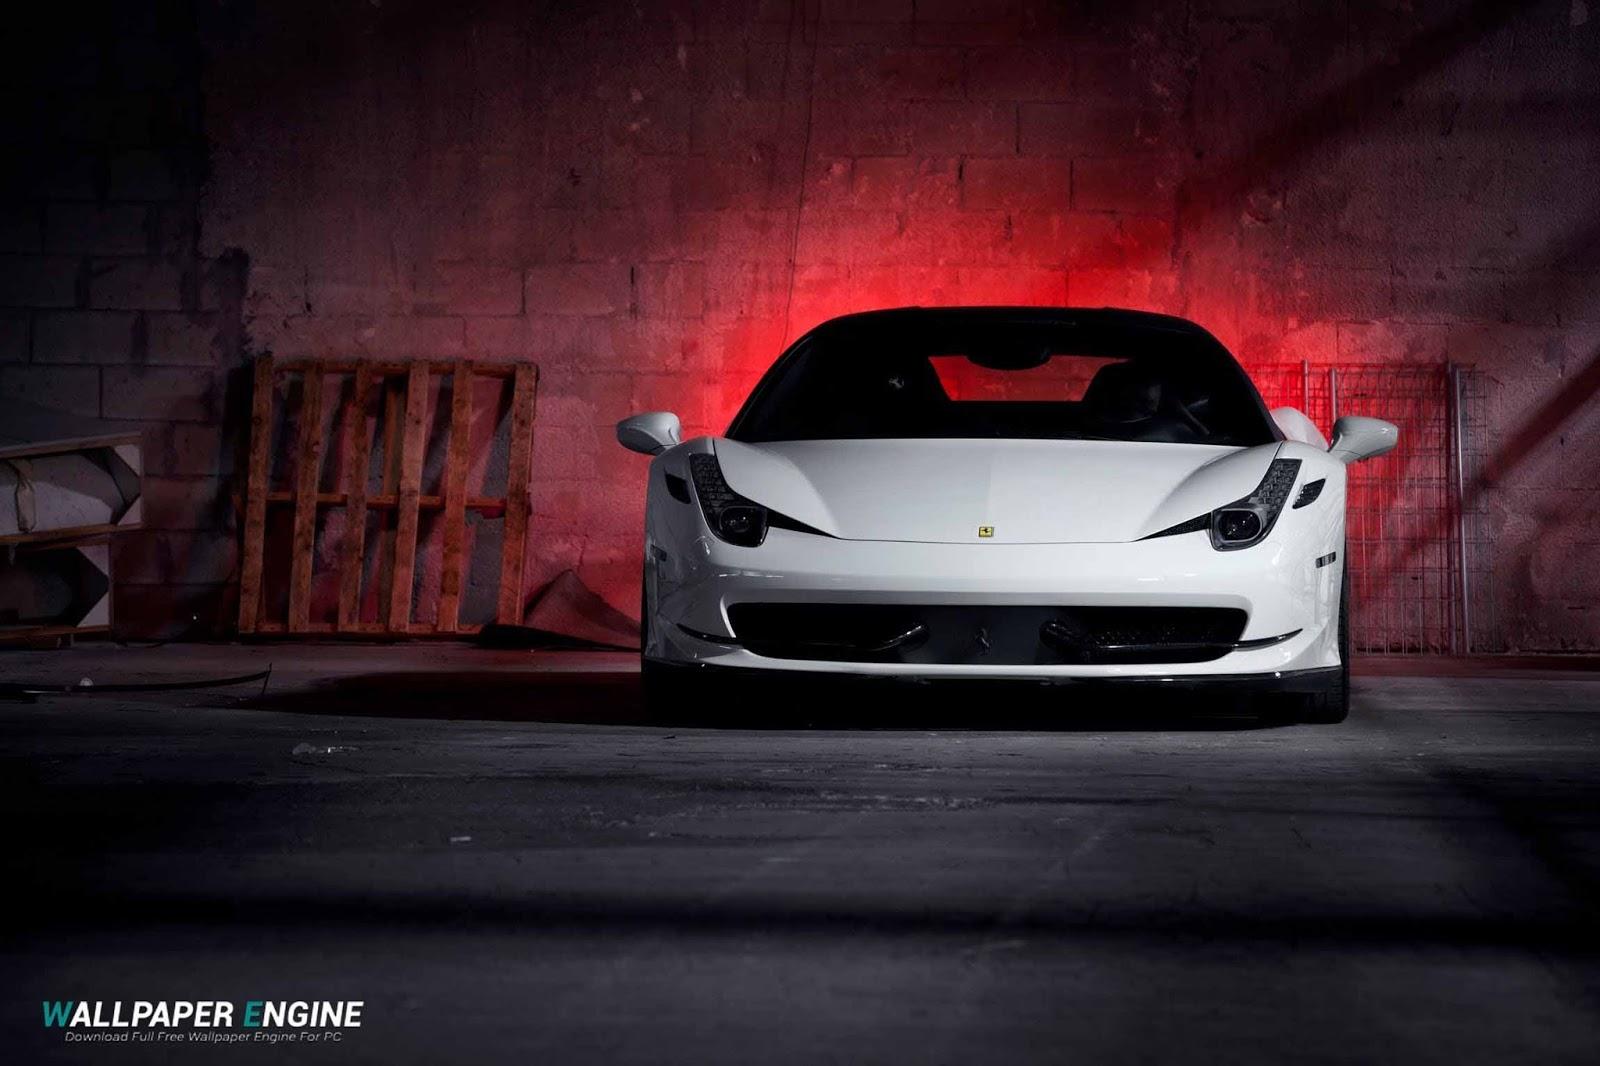 HD wallpaper: white Ferrari 458 Italia, 488, spider, side view, car, luxury  | Wallpaper Flare